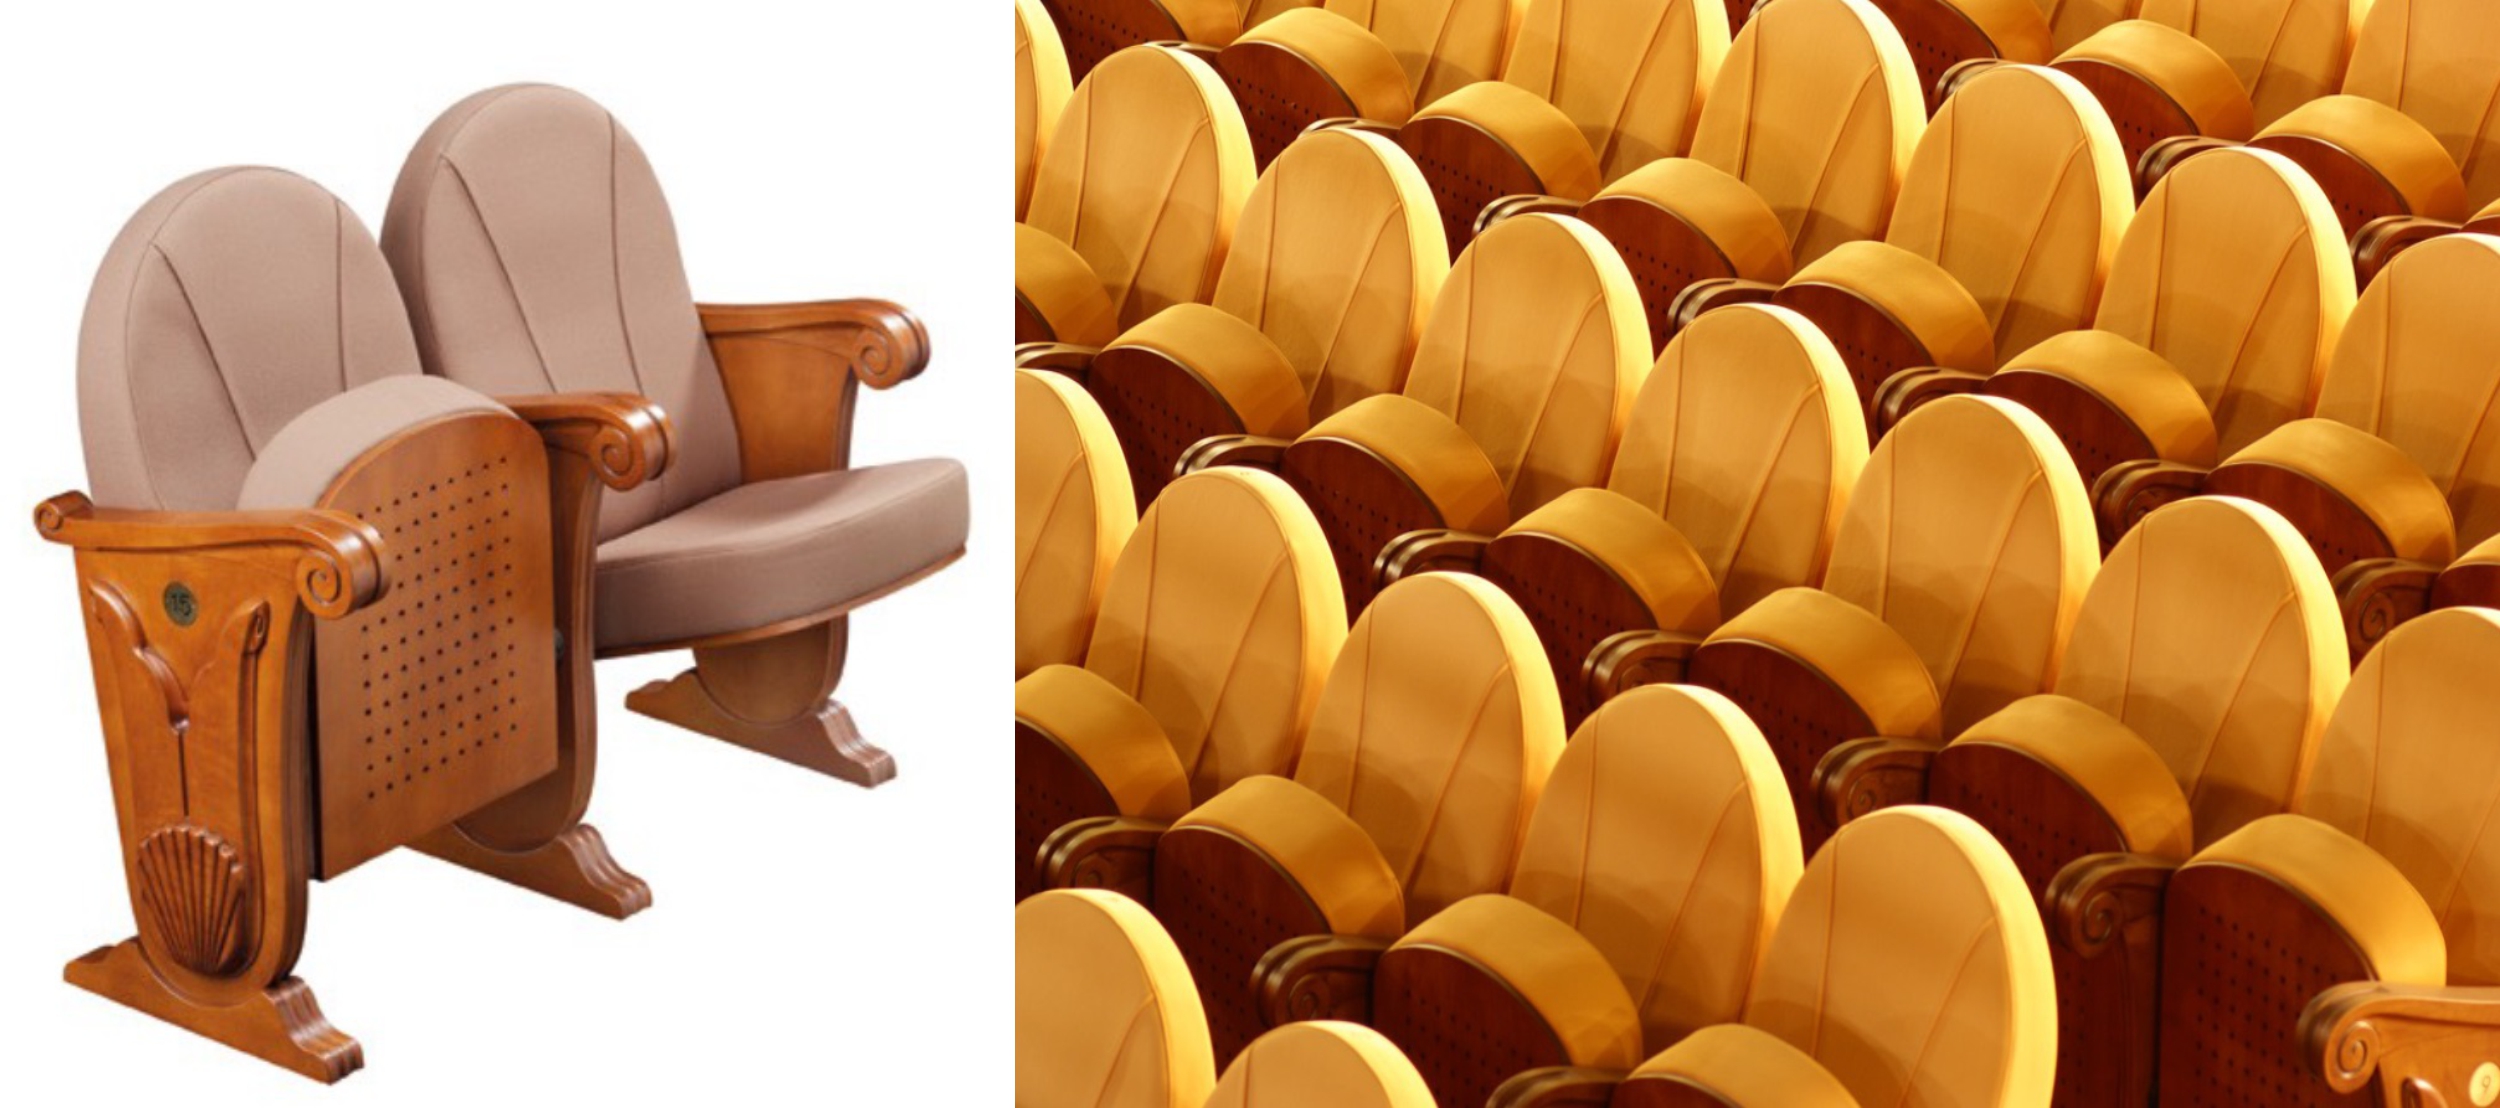 színház székek